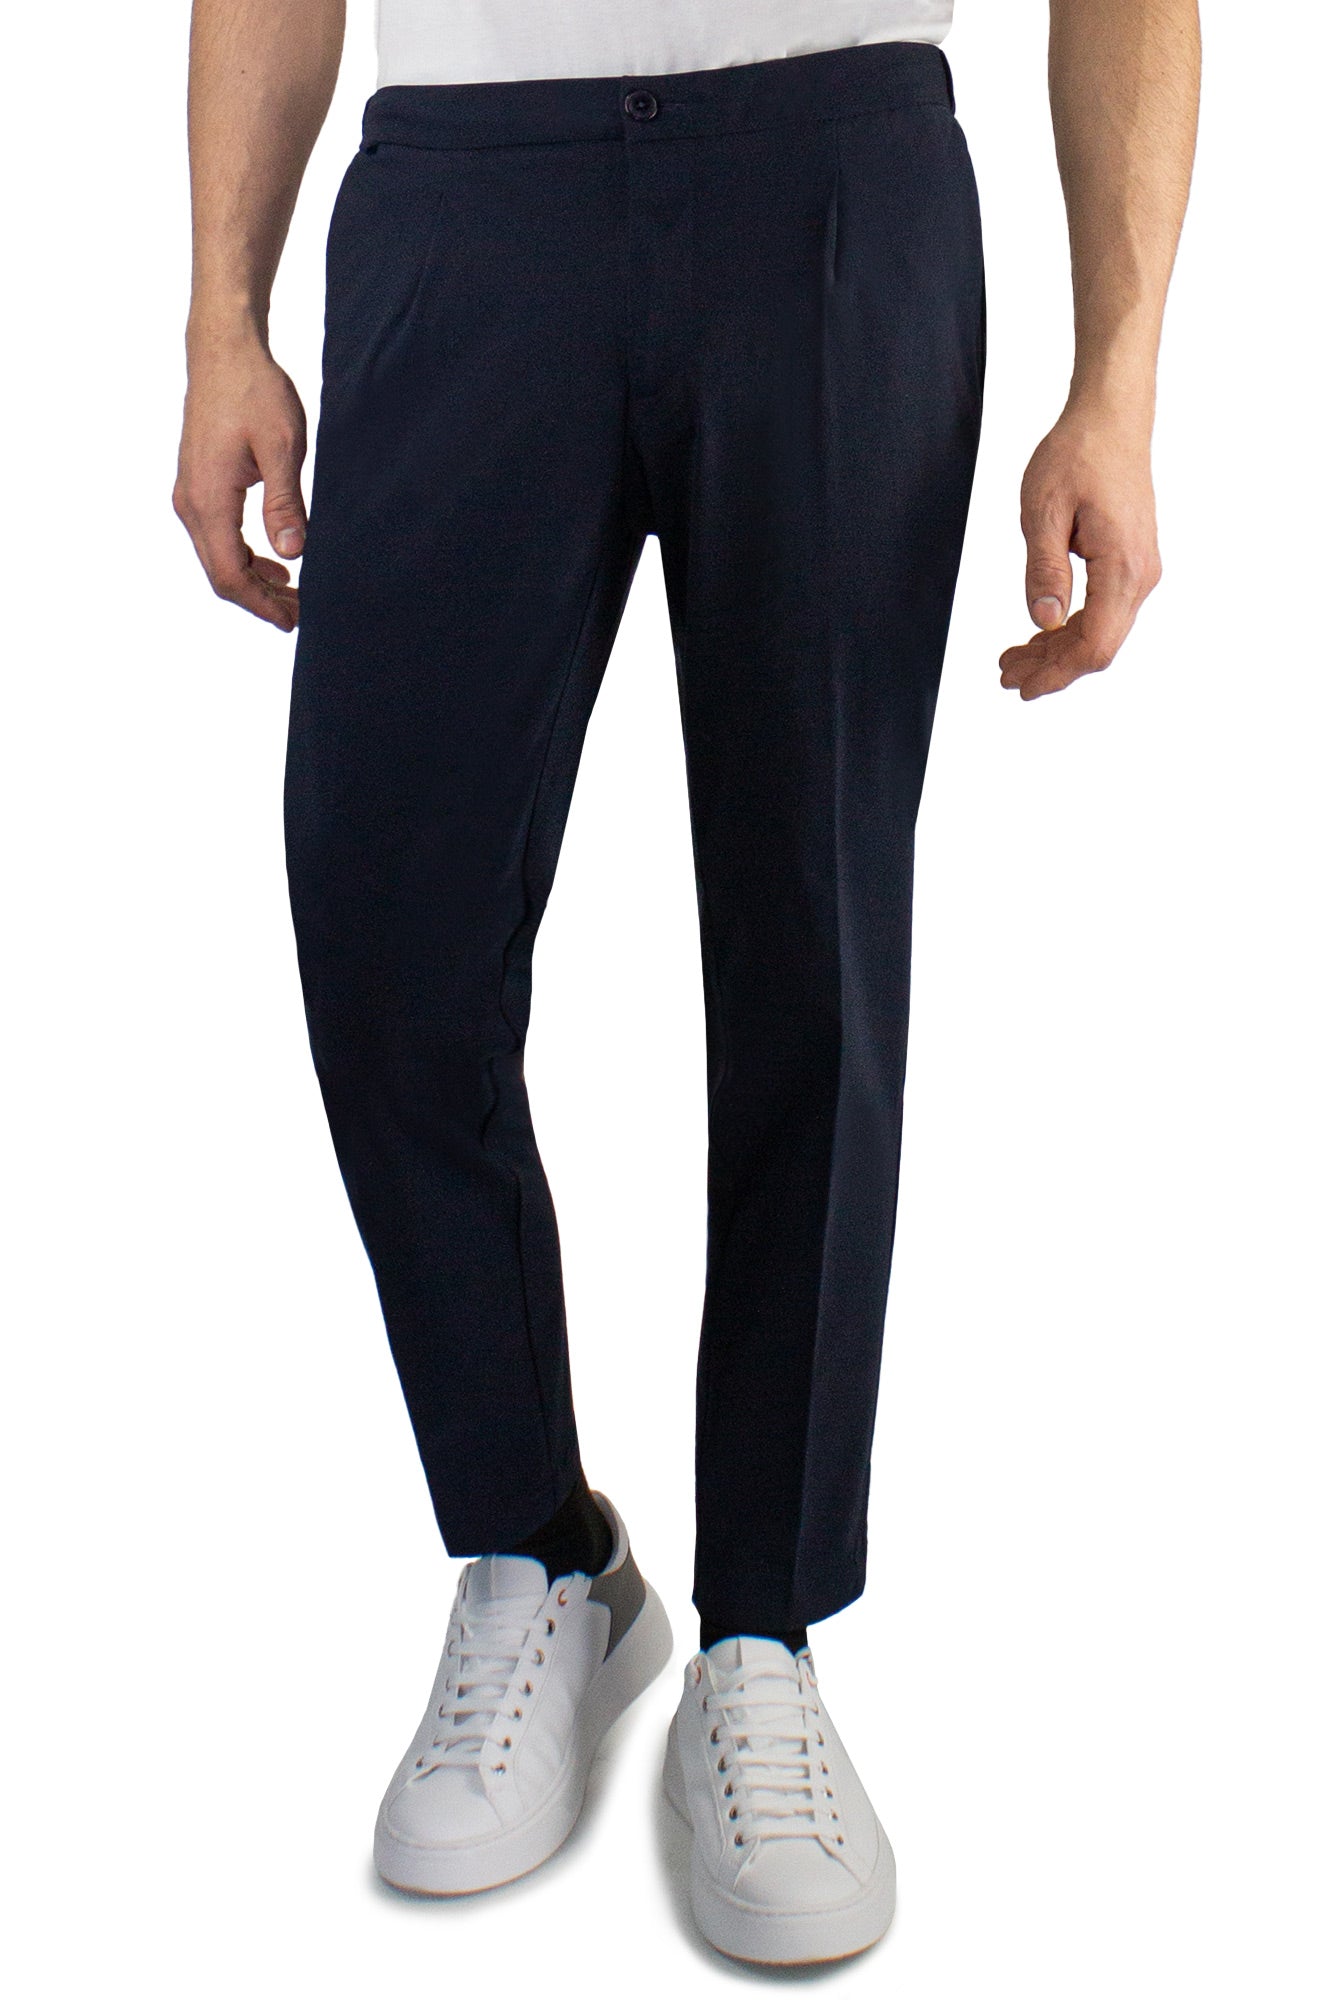 Pantaloni con coulisse in tessuto tecnico nylon sensitive